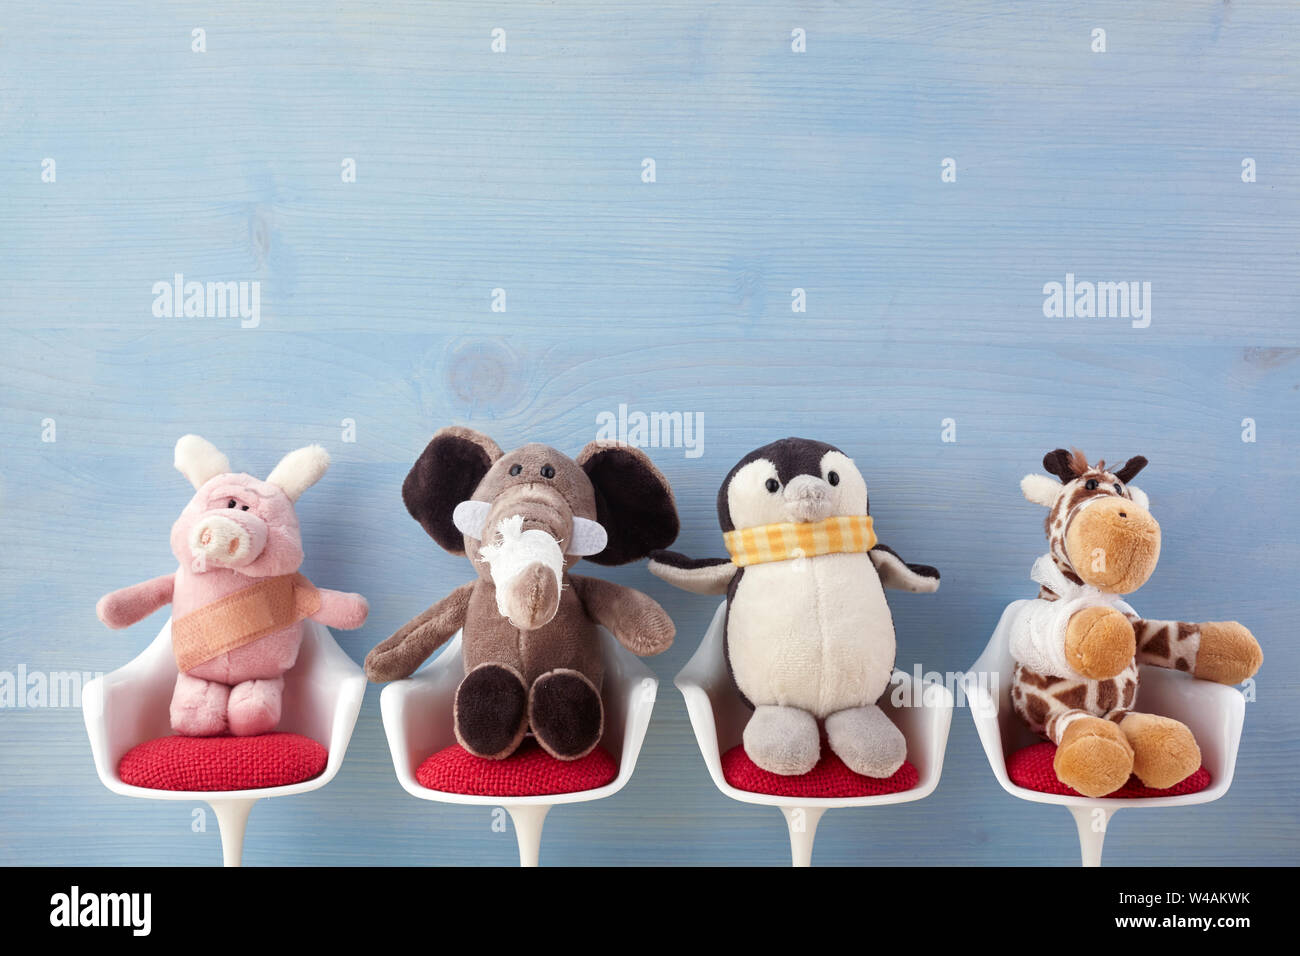 Kinderarzt. Spielzeug Tiere auf dem Stuhl im Krankenhaus.  Gesundheitszentrum für Kinder Stockfotografie - Alamy